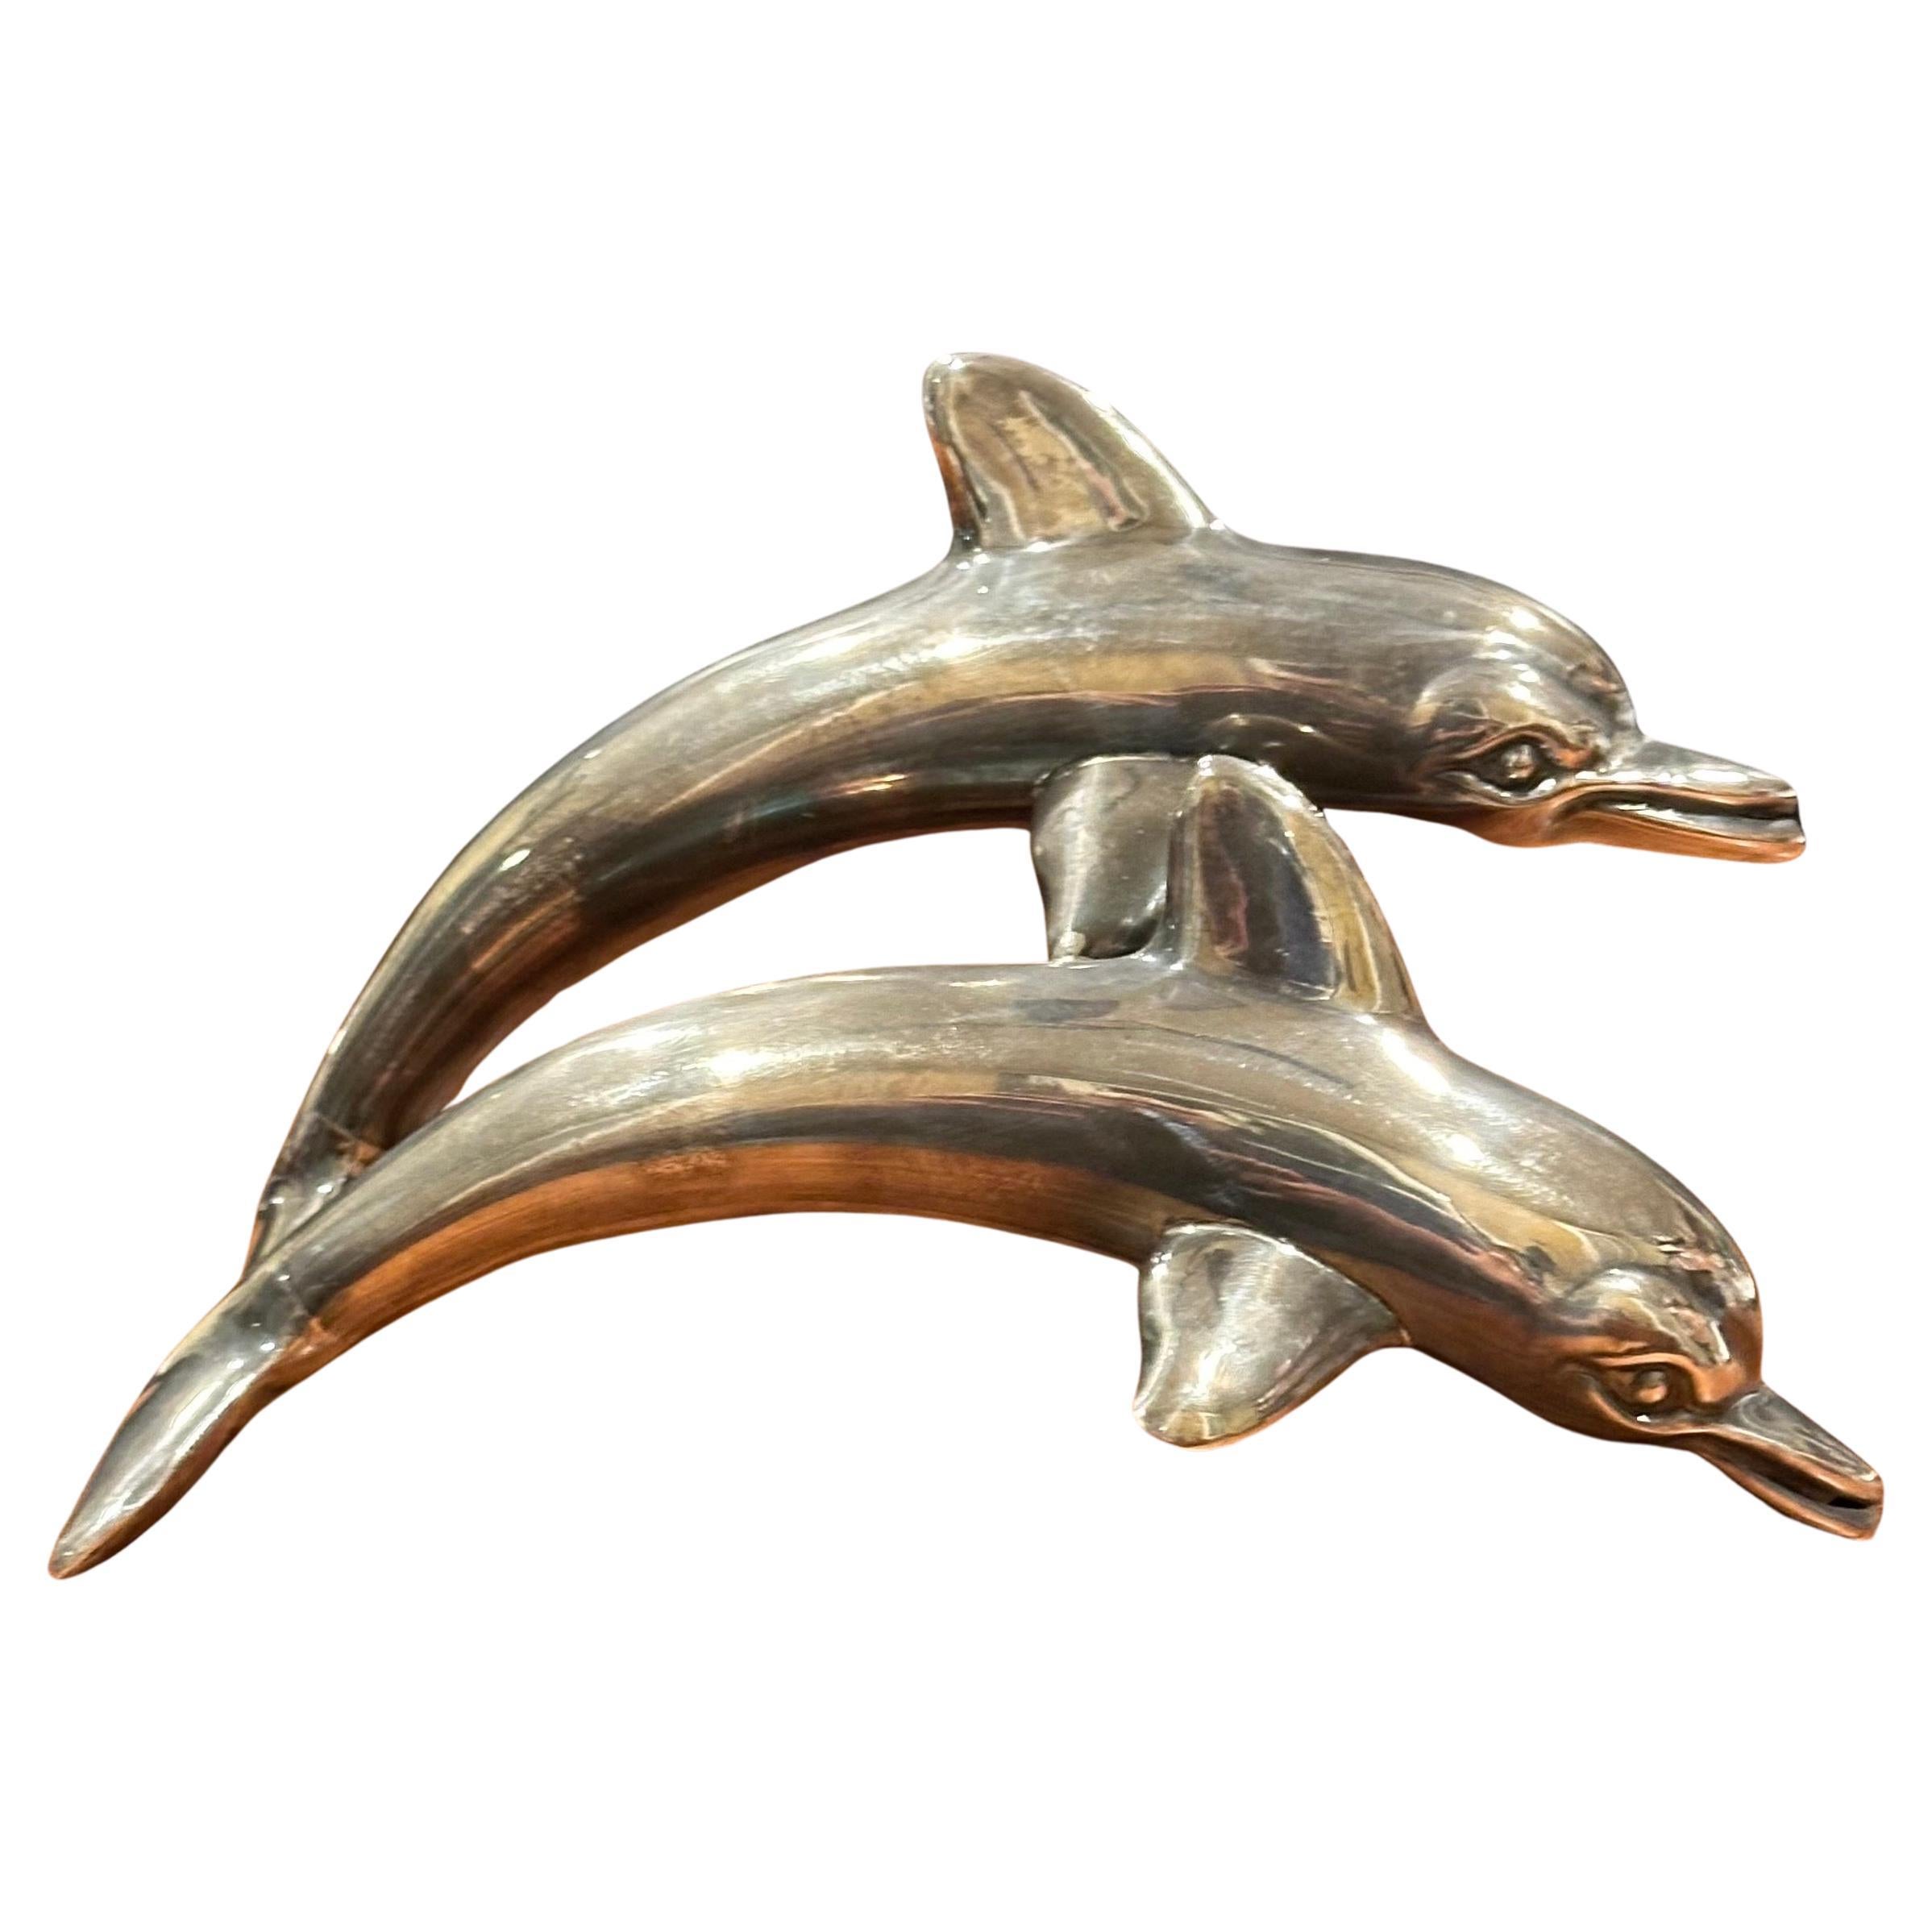 Très belle sculpture en argent sterling à deux dauphins, datant du milieu du siècle dernier, vers les années 1970. La pièce est en très bon état avec une belle patine et mesure 7 